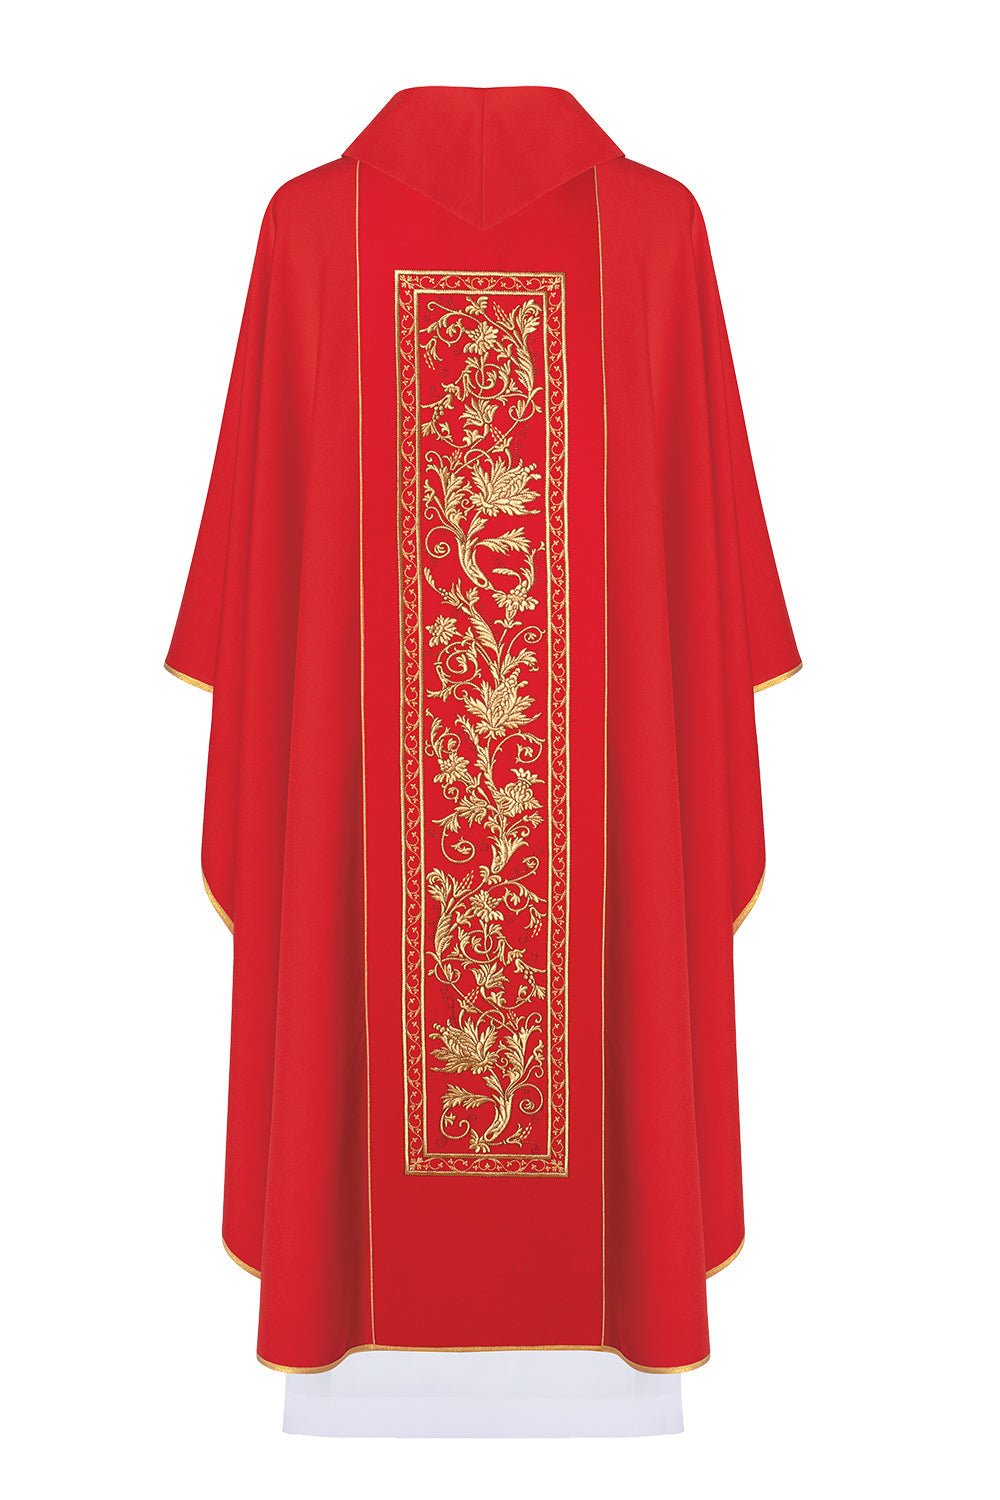 Ornat haftowany z symbolem kielicha eucharystycznego KOR/040 Czerwony - ORNATY.PL